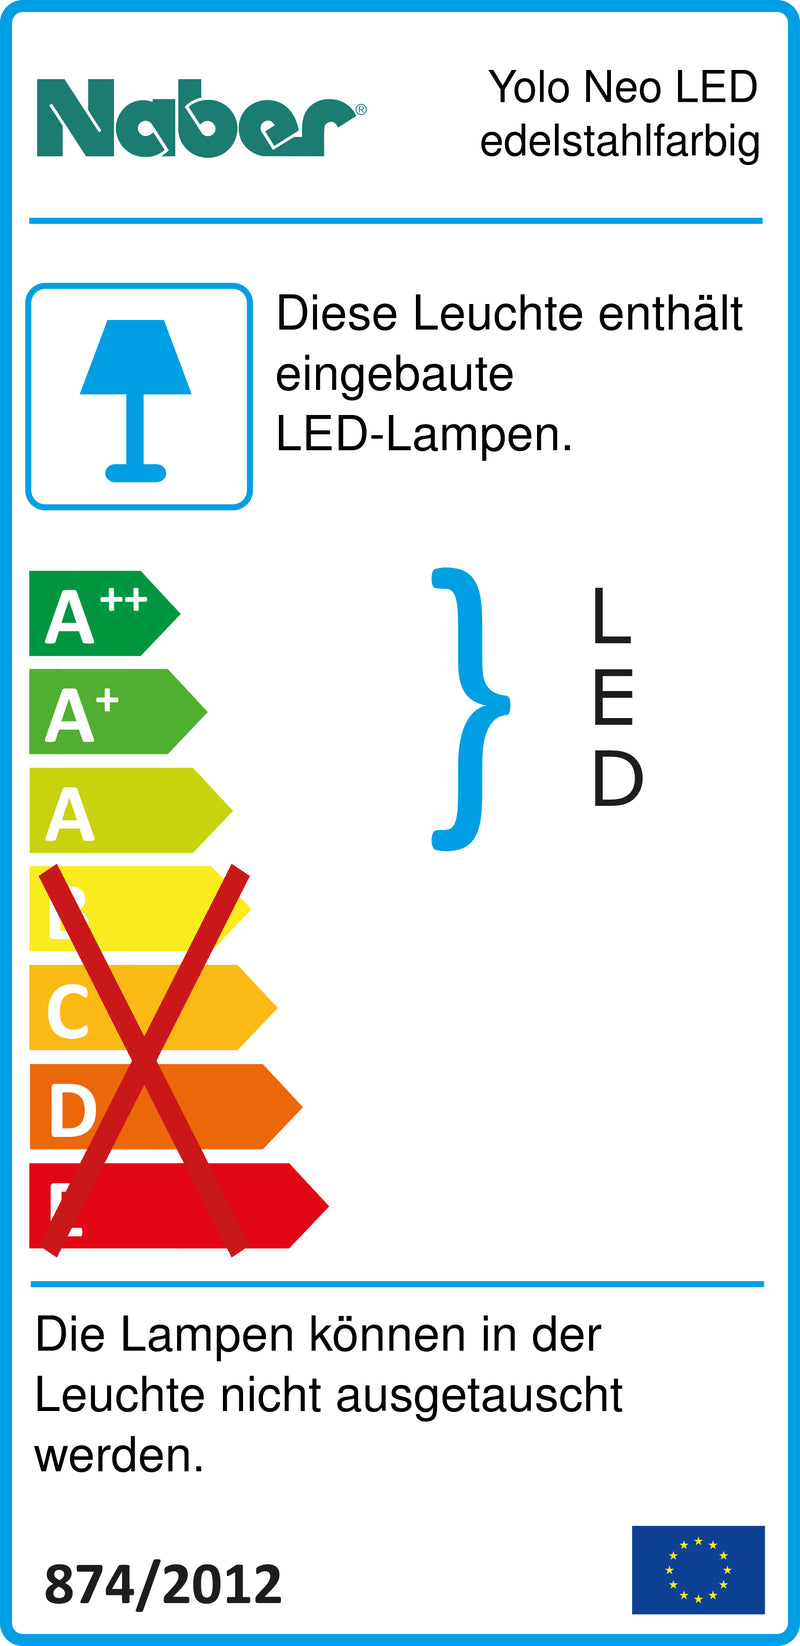 E-Label zu Zeichnung zu Yolo Neo LED edelstahlfarbig als Variante Set-3, 4000 K neutralweiß von Naber GmbH in der Kategorie Lichttechnik in Österreich auf conceptshop.at